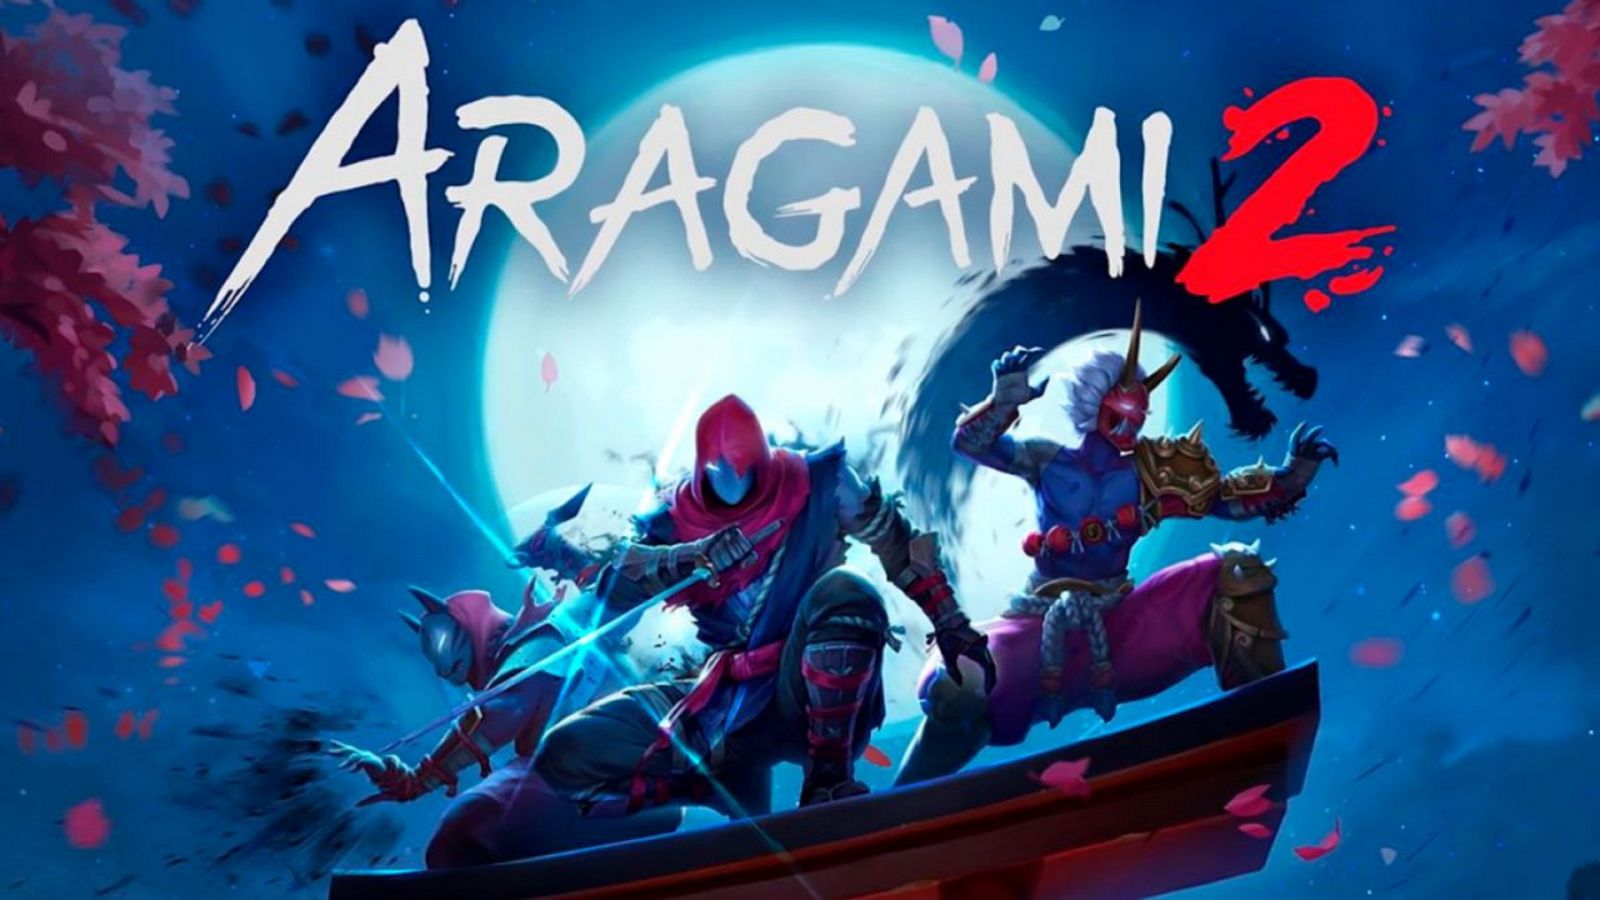 El videojuego español 'Aragami' vuelve con una segunda entrega